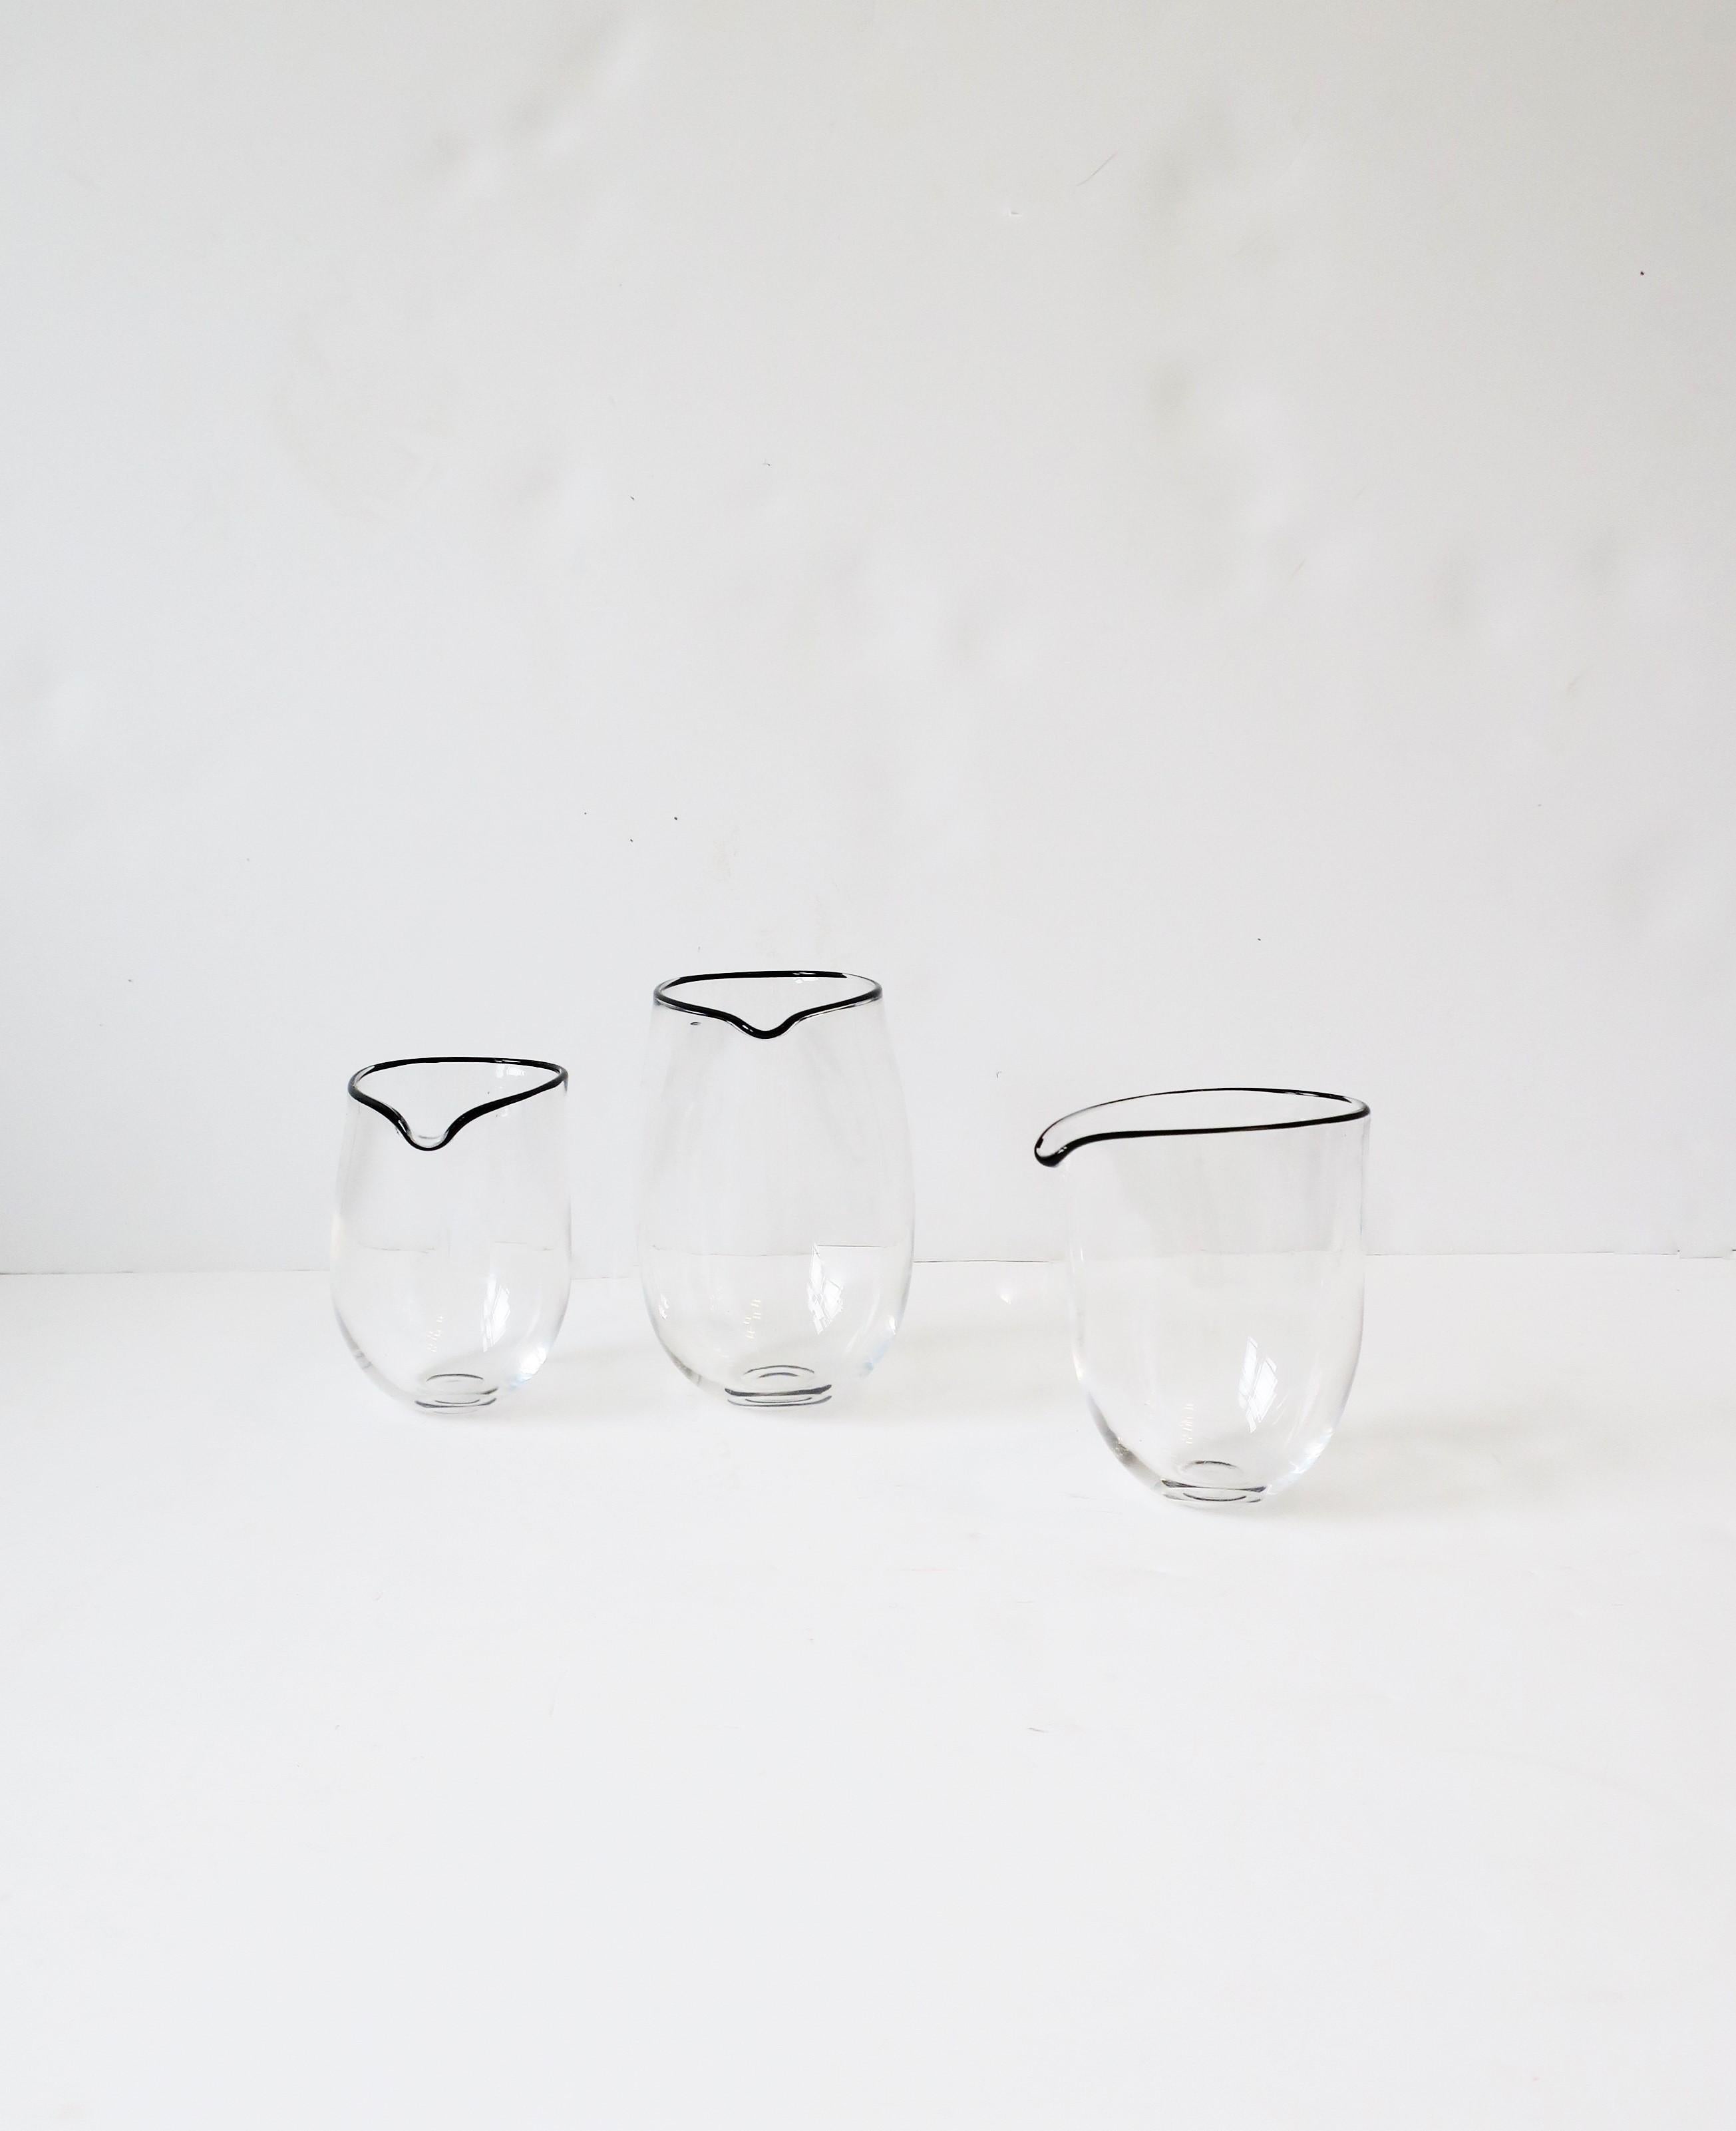 Un magnifique ensemble de trois (3) récipients à cocktail de style moderne/minimaliste en verre d'art, fabriqués en Angleterre par l'artiste designer Simon Moore, vers la fin du 20e siècle, années 1990. Tous les verres, fabriqués à la main, sont en